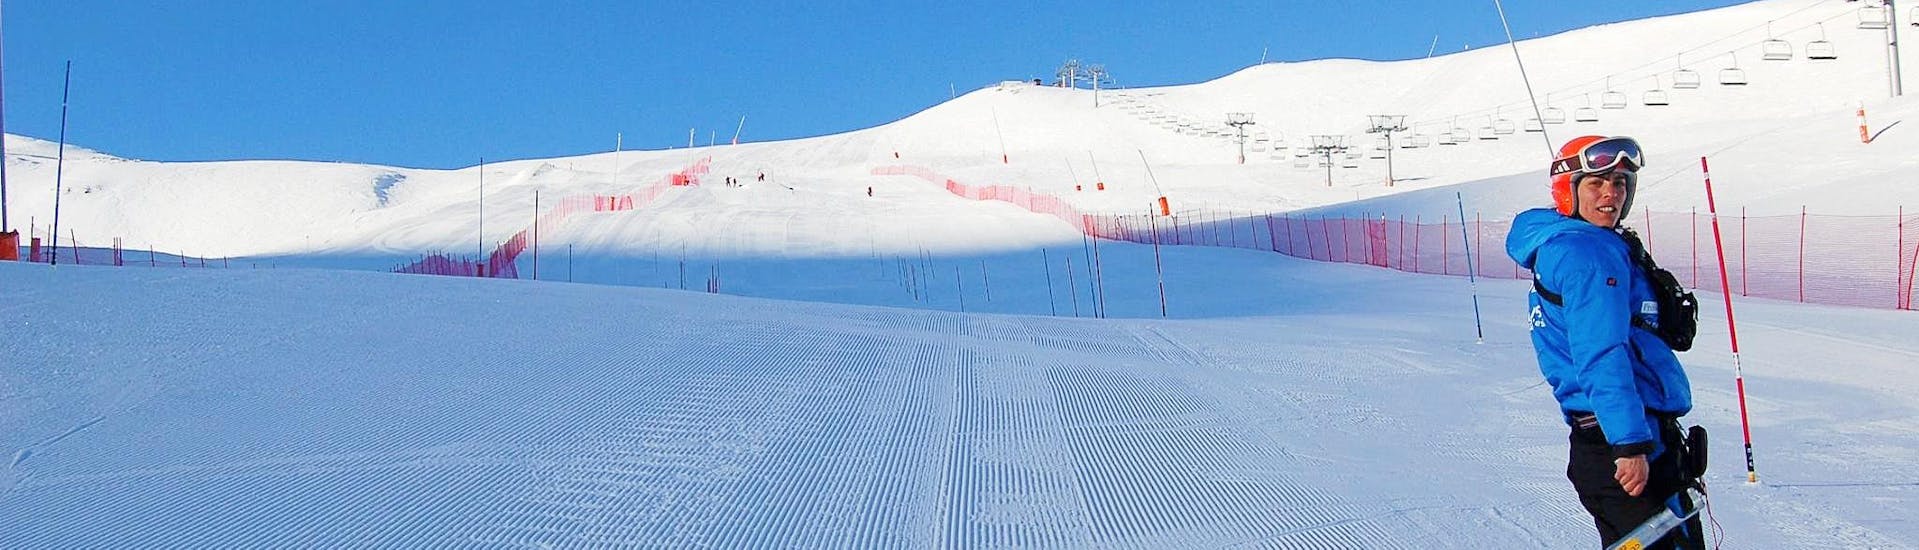 Skilessen voor volwassenen vanaf 18 jaar voor alle niveaus.